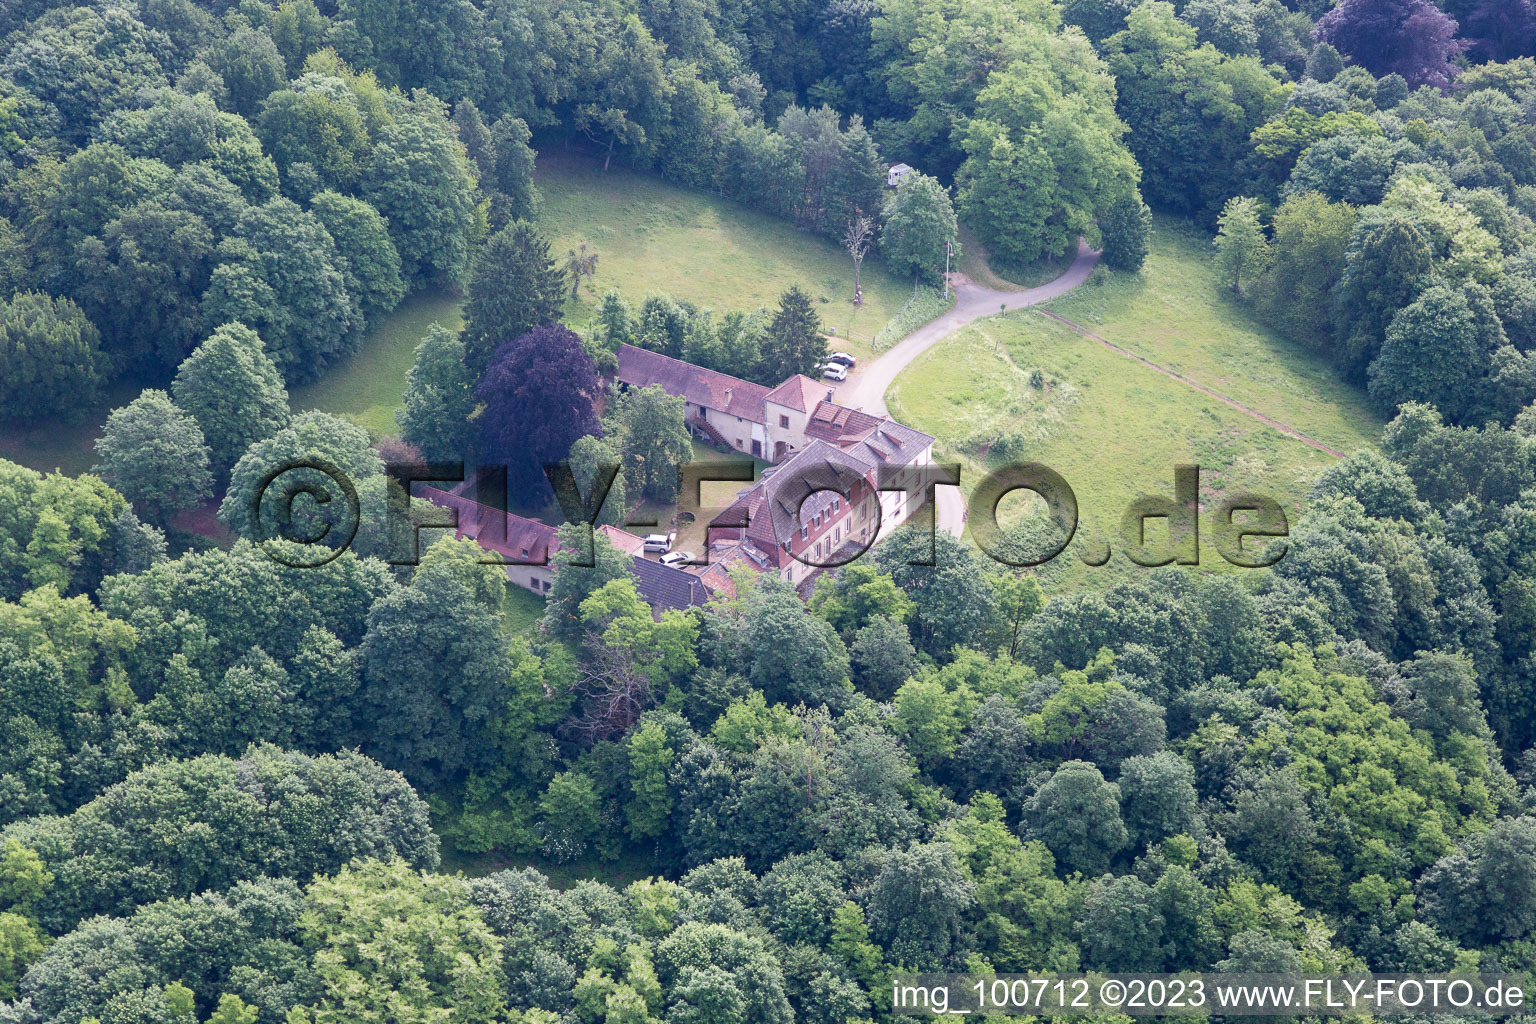 Sankt Germannshof im Bundesland Rheinland-Pfalz, Deutschland aus der Drohnenperspektive